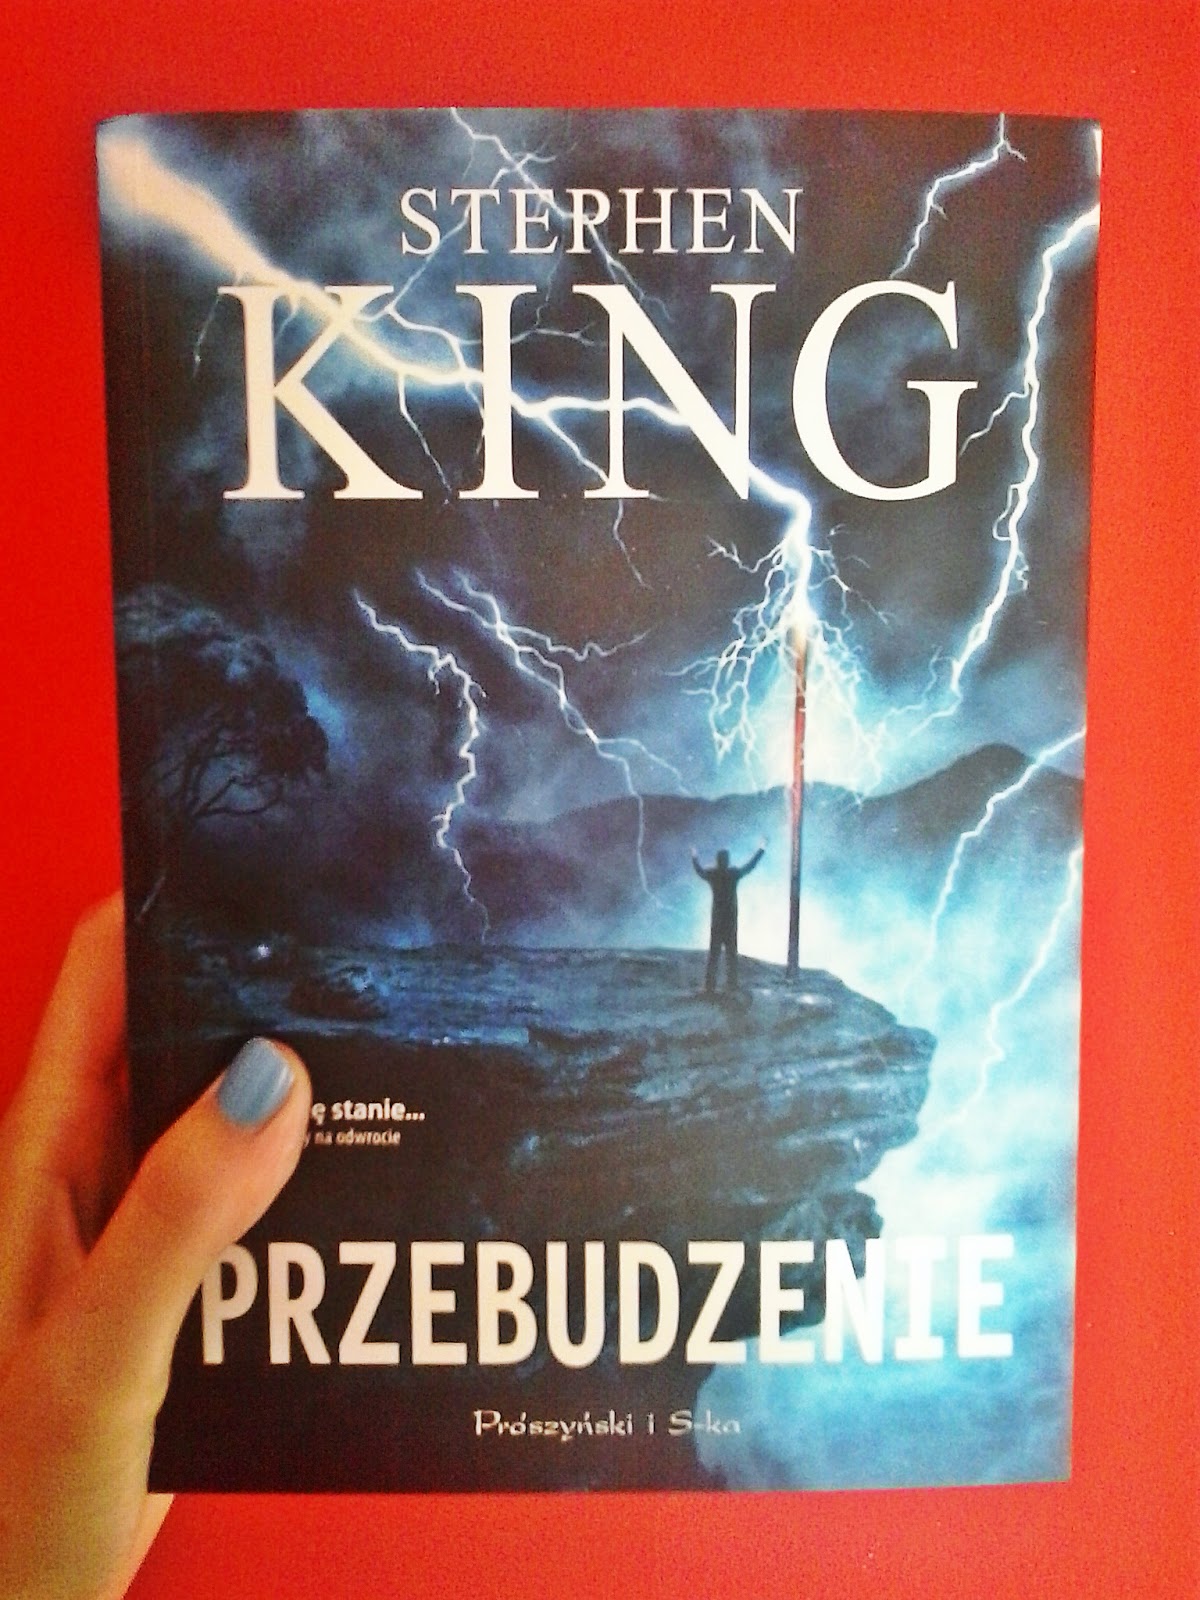 Stephen King "Przebudzenie"